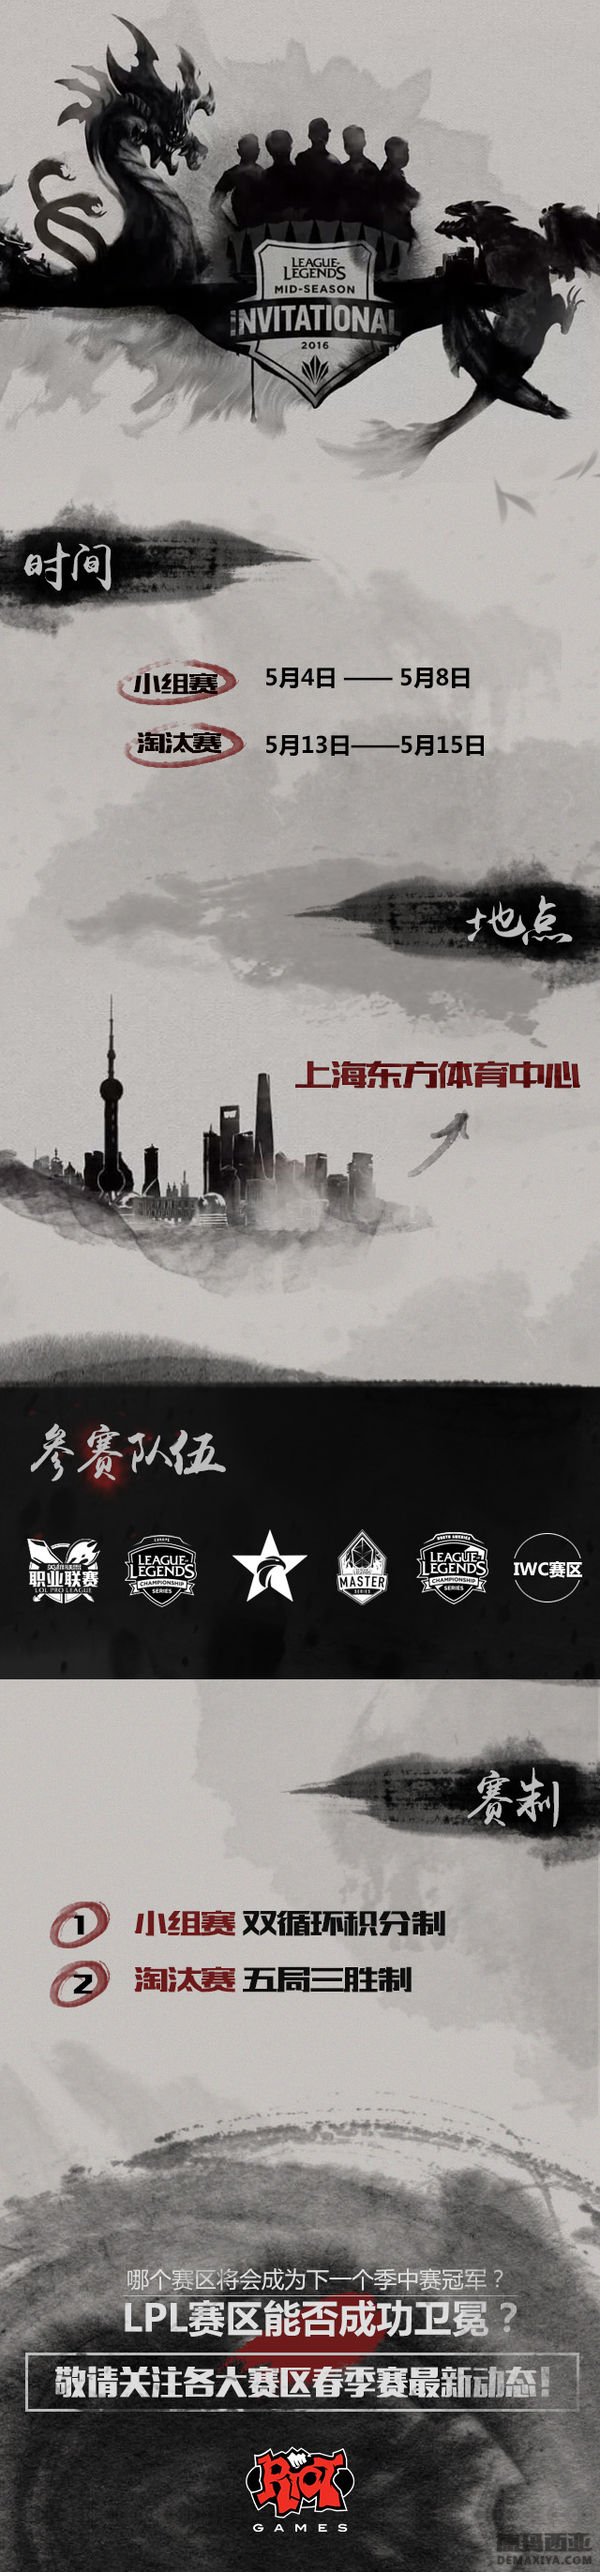 16年全球赛事详细 MSI季中赛来到上海